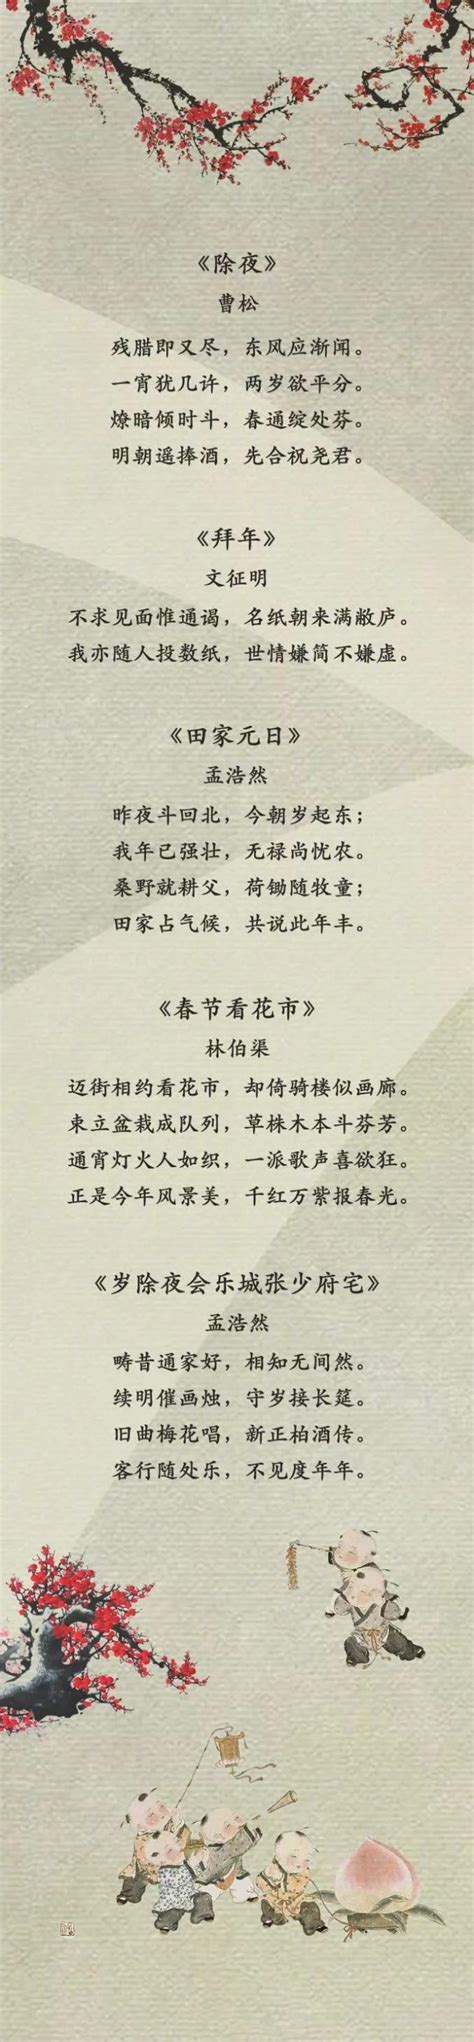 庆祝春节的诗词